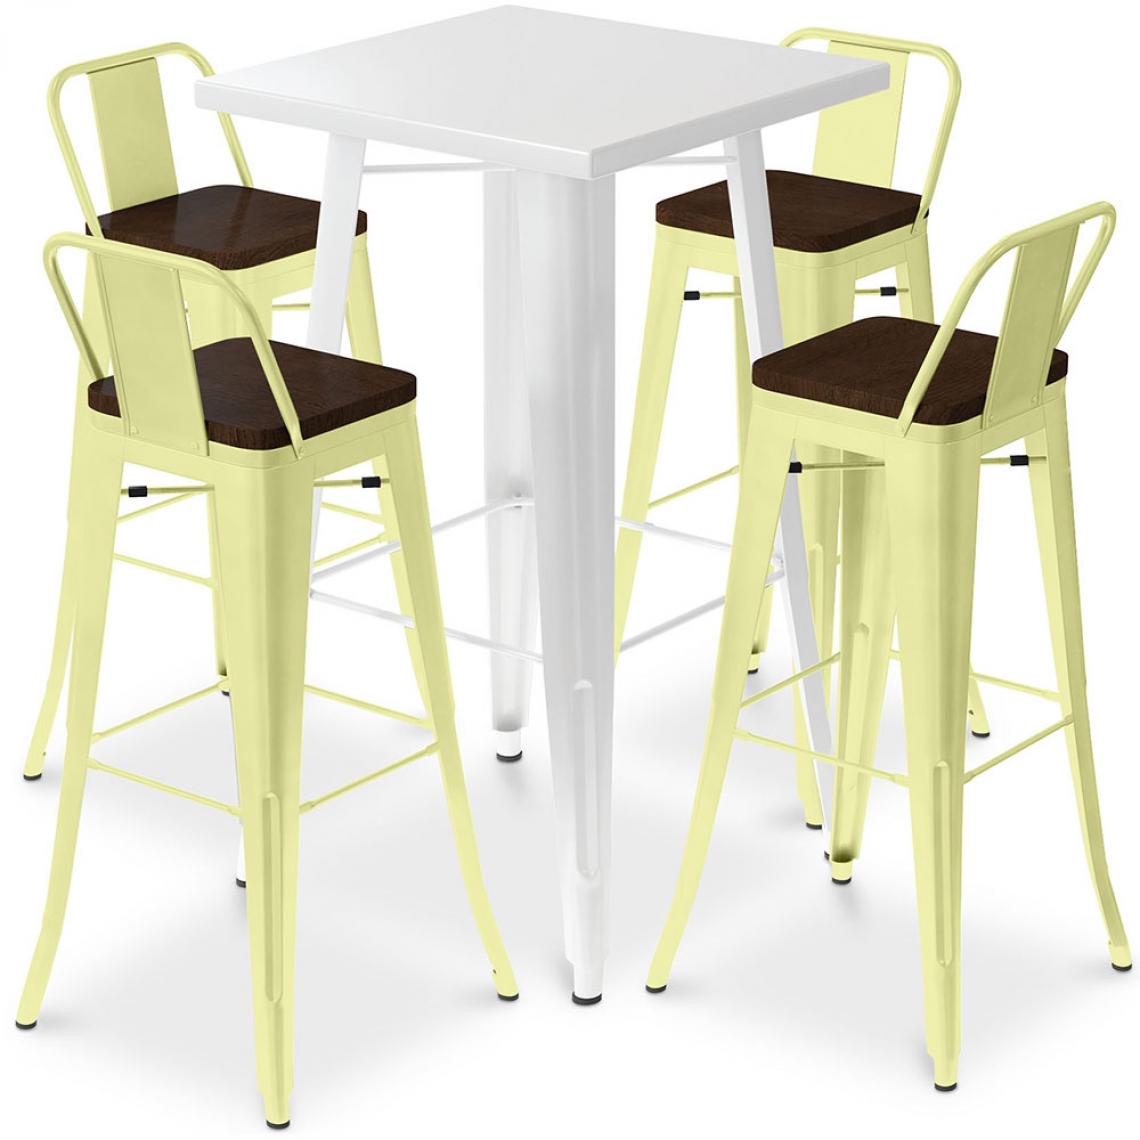 Iconik Interior - Table de bar blanche + 4 tabourets de bar en acier - Ensemble Bistrot Stylix Design industriel - Nouvelle édition Jaune pâle - Tabourets